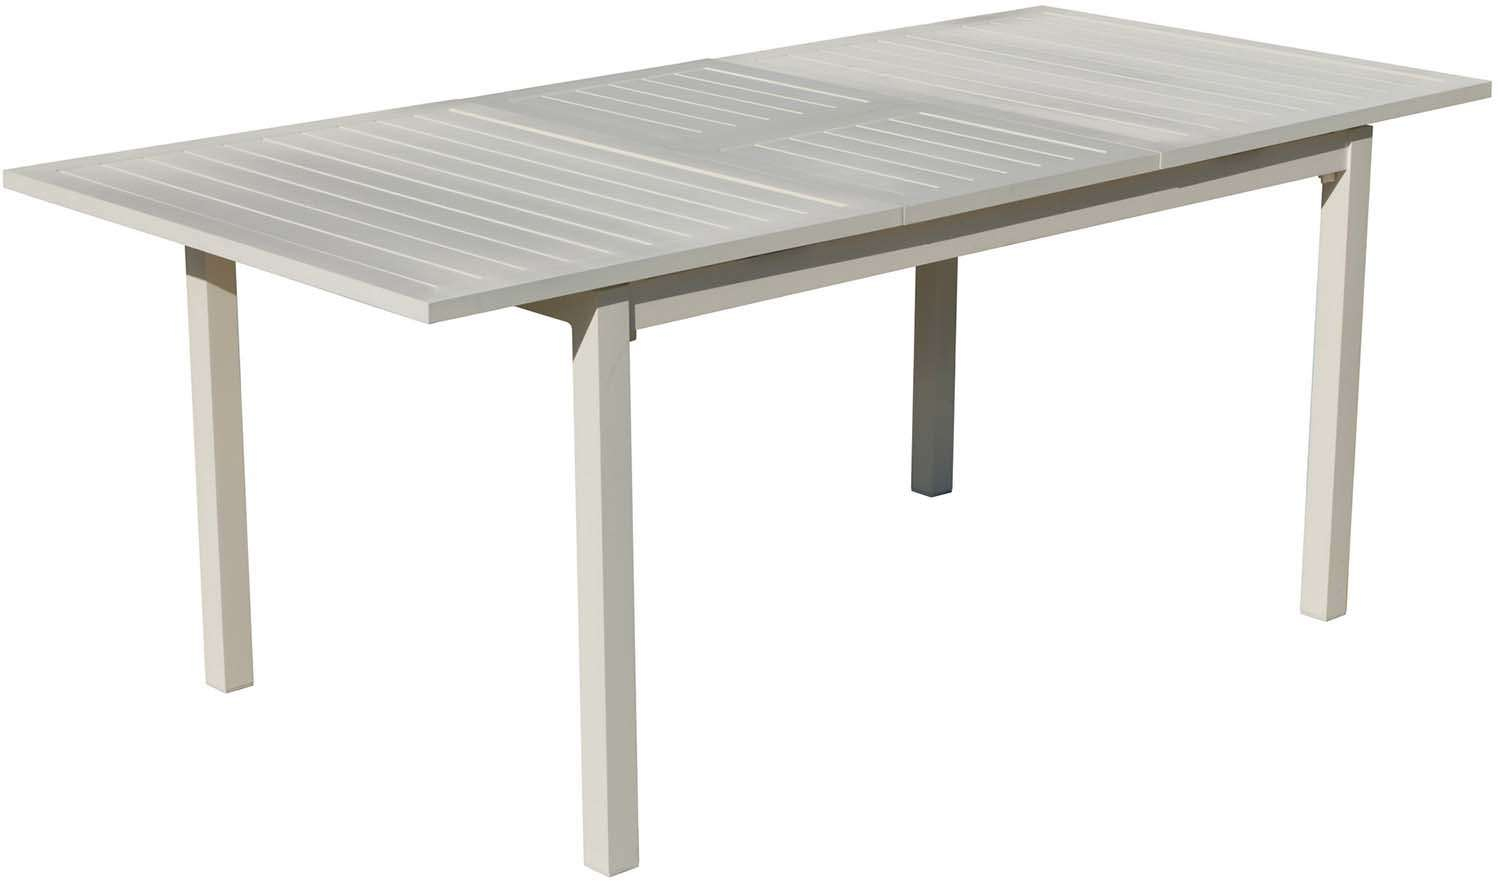 Table De Jardin En Aluminium Extensible Sarana dedans Table De Jardin En Aluminium Extensible